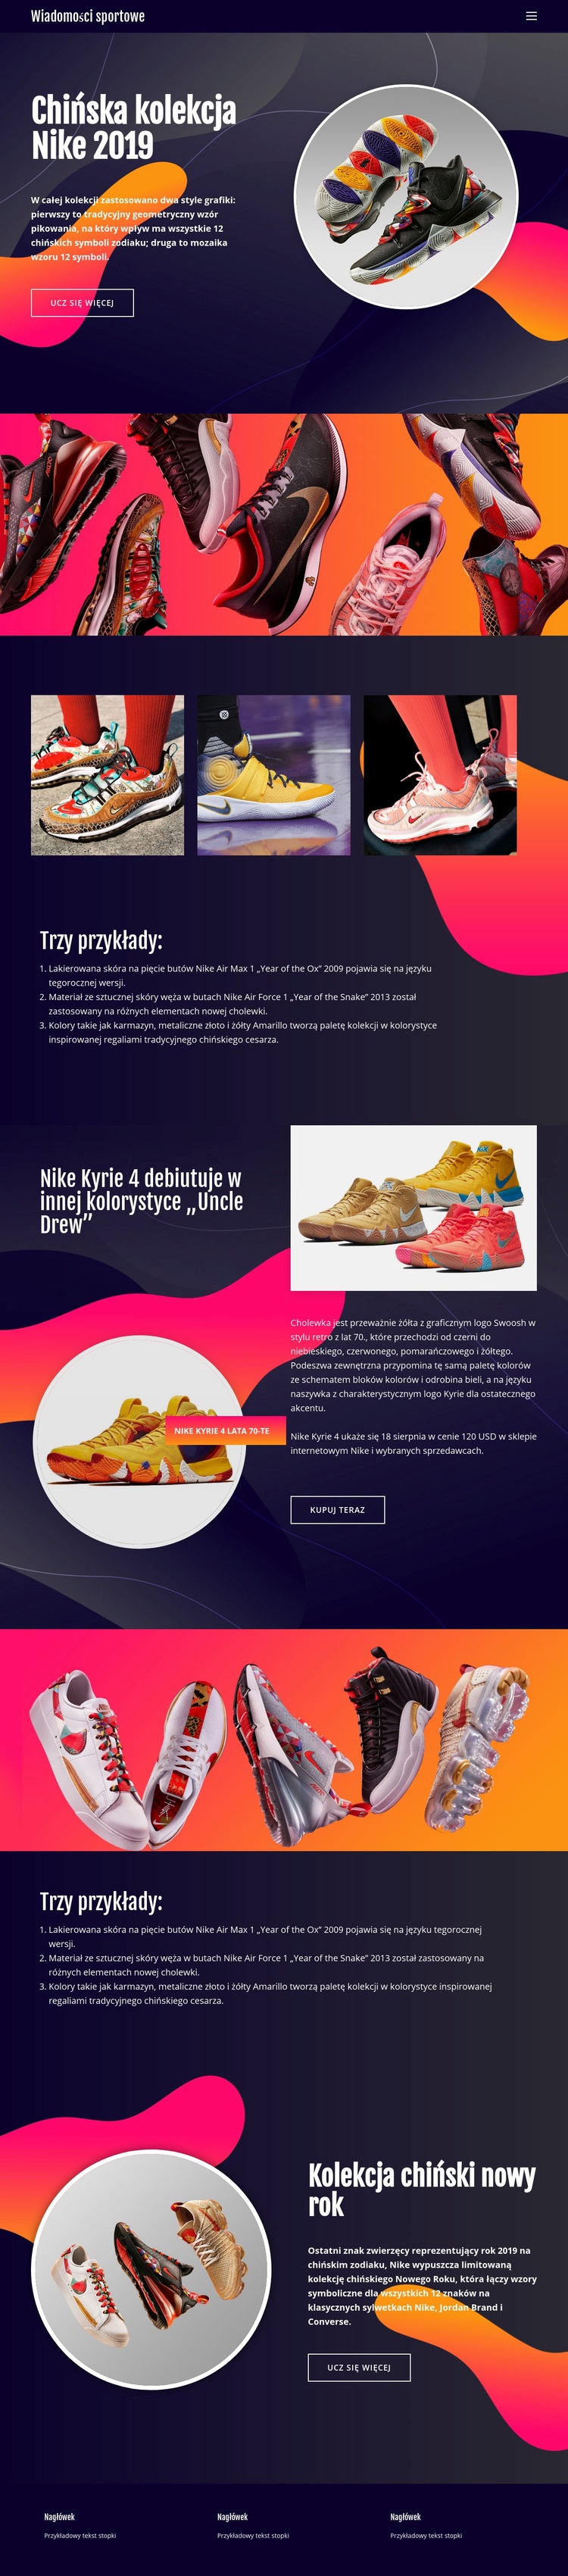 Kolekcja Nike Projekt strony internetowej